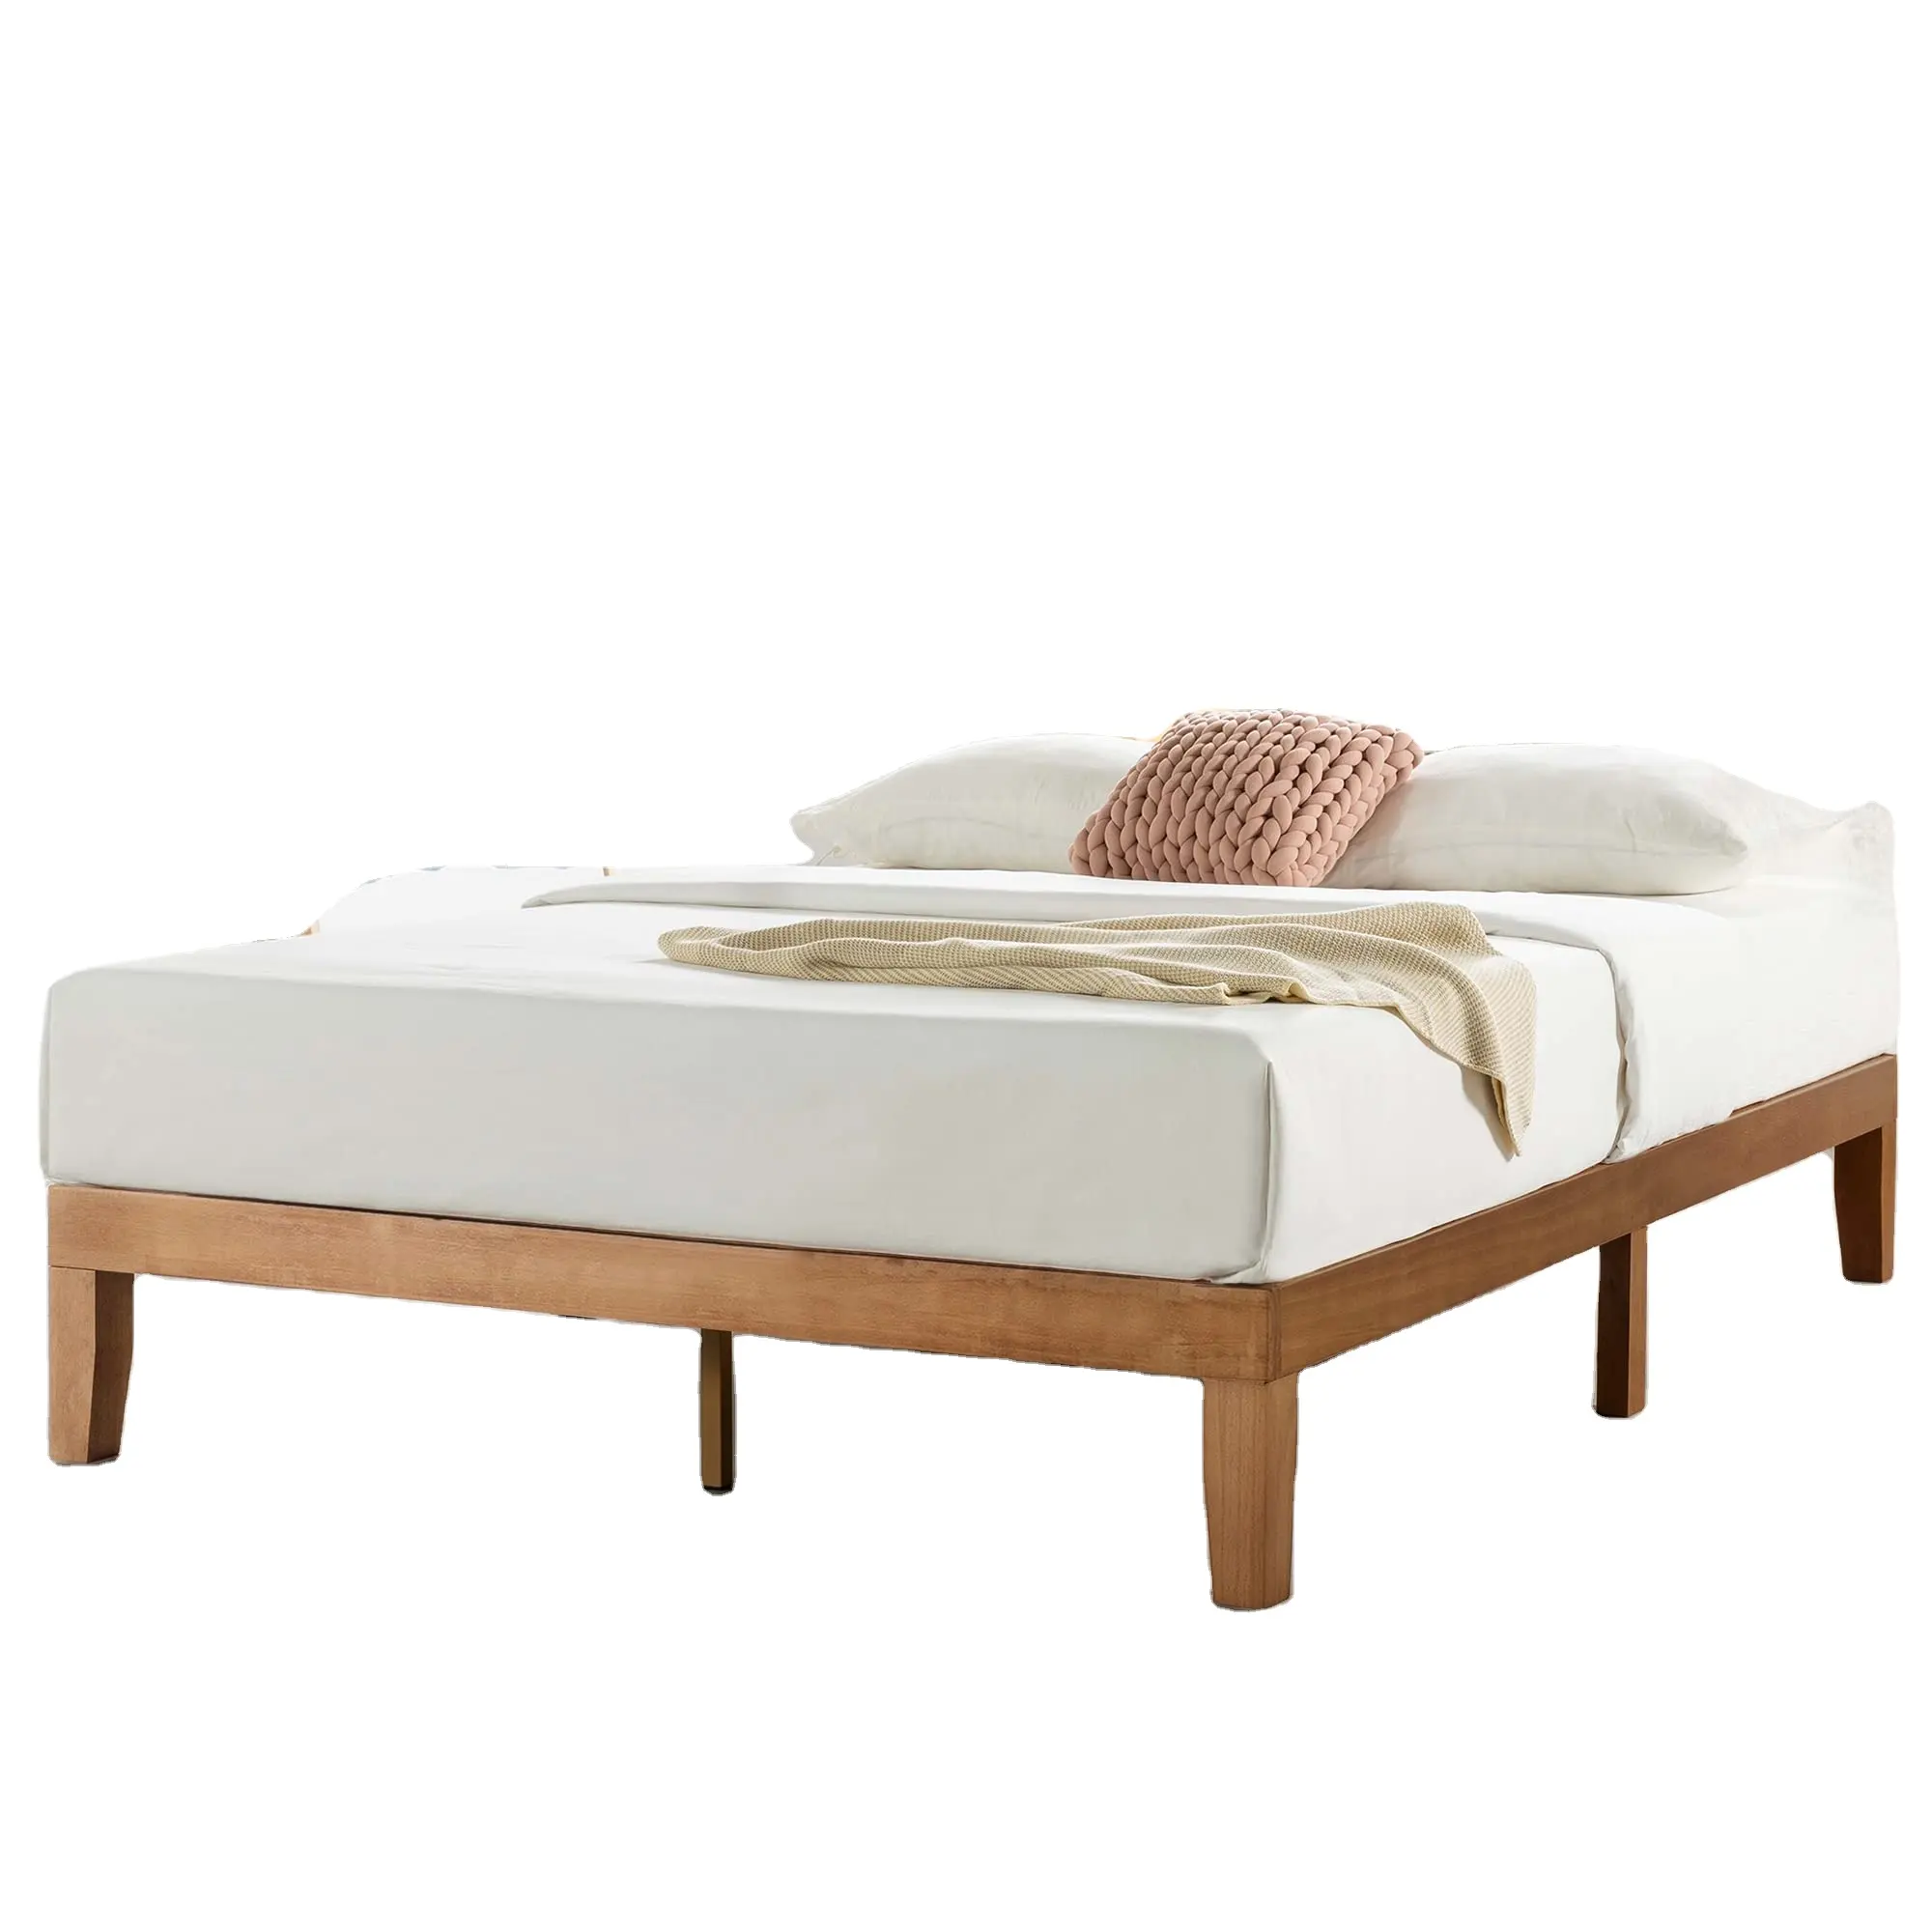 Cadre de lit de produits en gros, lit plate-forme classique en bois massif de 12 pouces, lattes en bois, pas besoin de sommier, facile à assembler